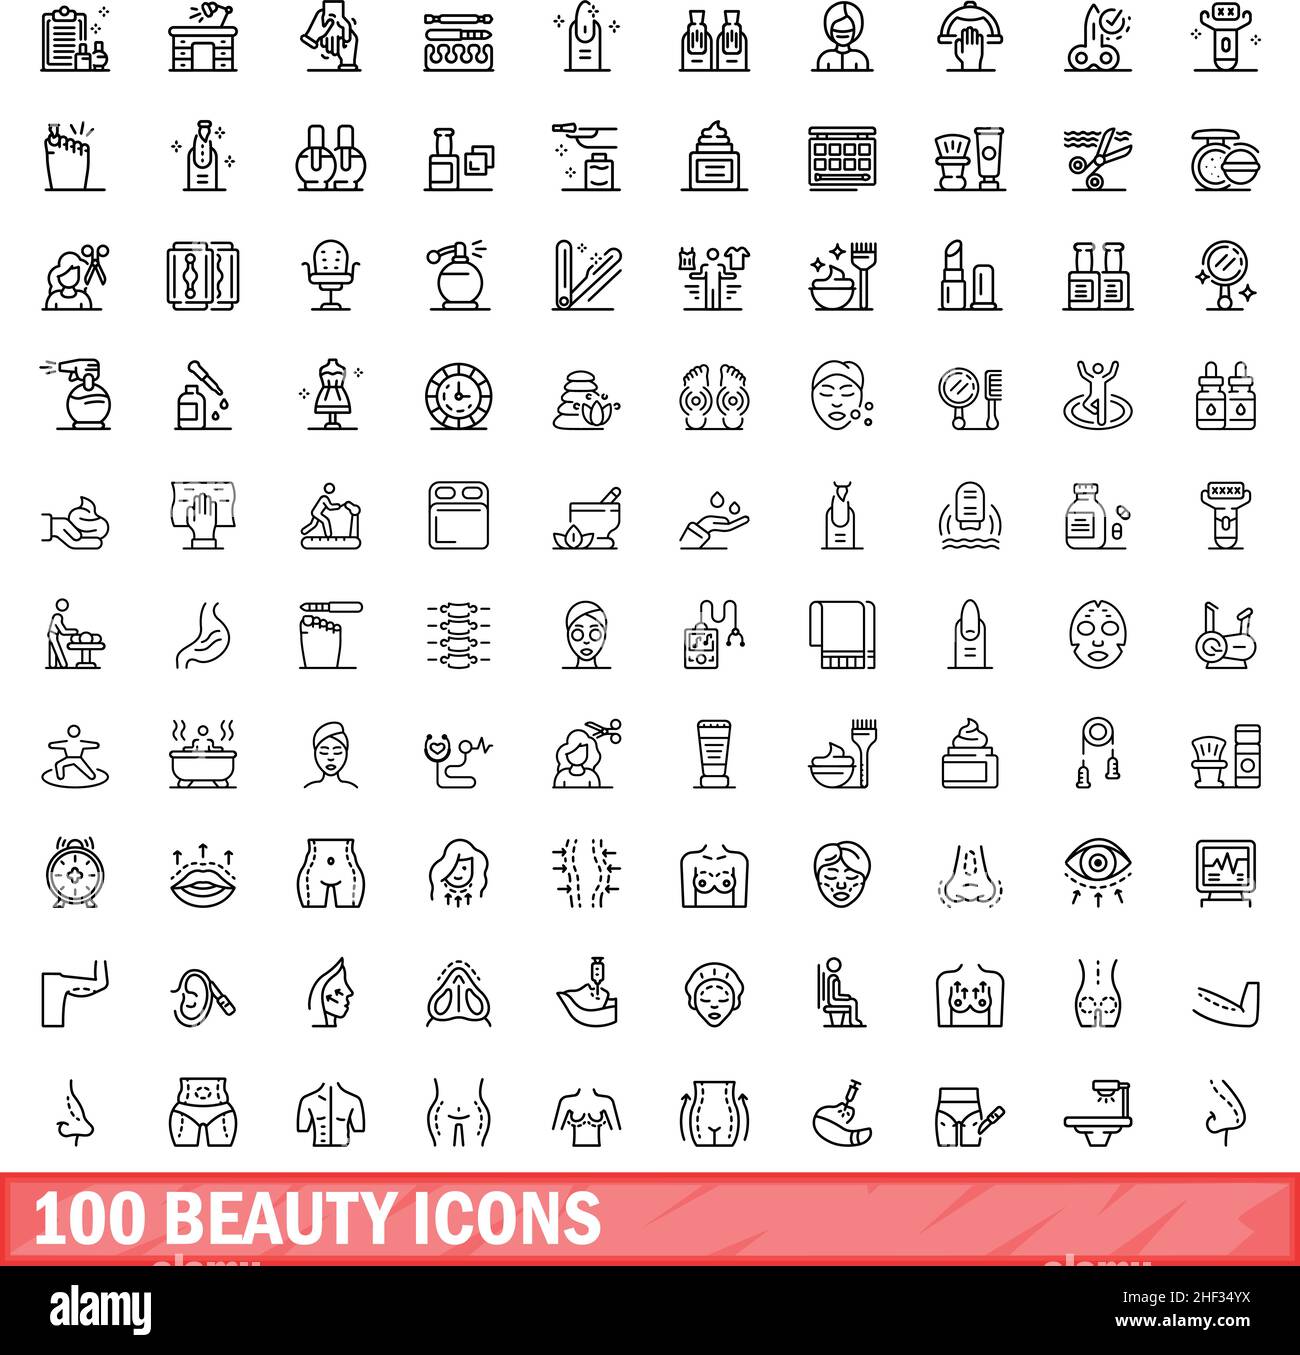 100 Beauty-Ikonen-Set. Skizzieren Sie die Darstellung von 100 Vektorbildern für Schönheit, die isoliert auf weißem Hintergrund gesetzt wurden Stock Vektor